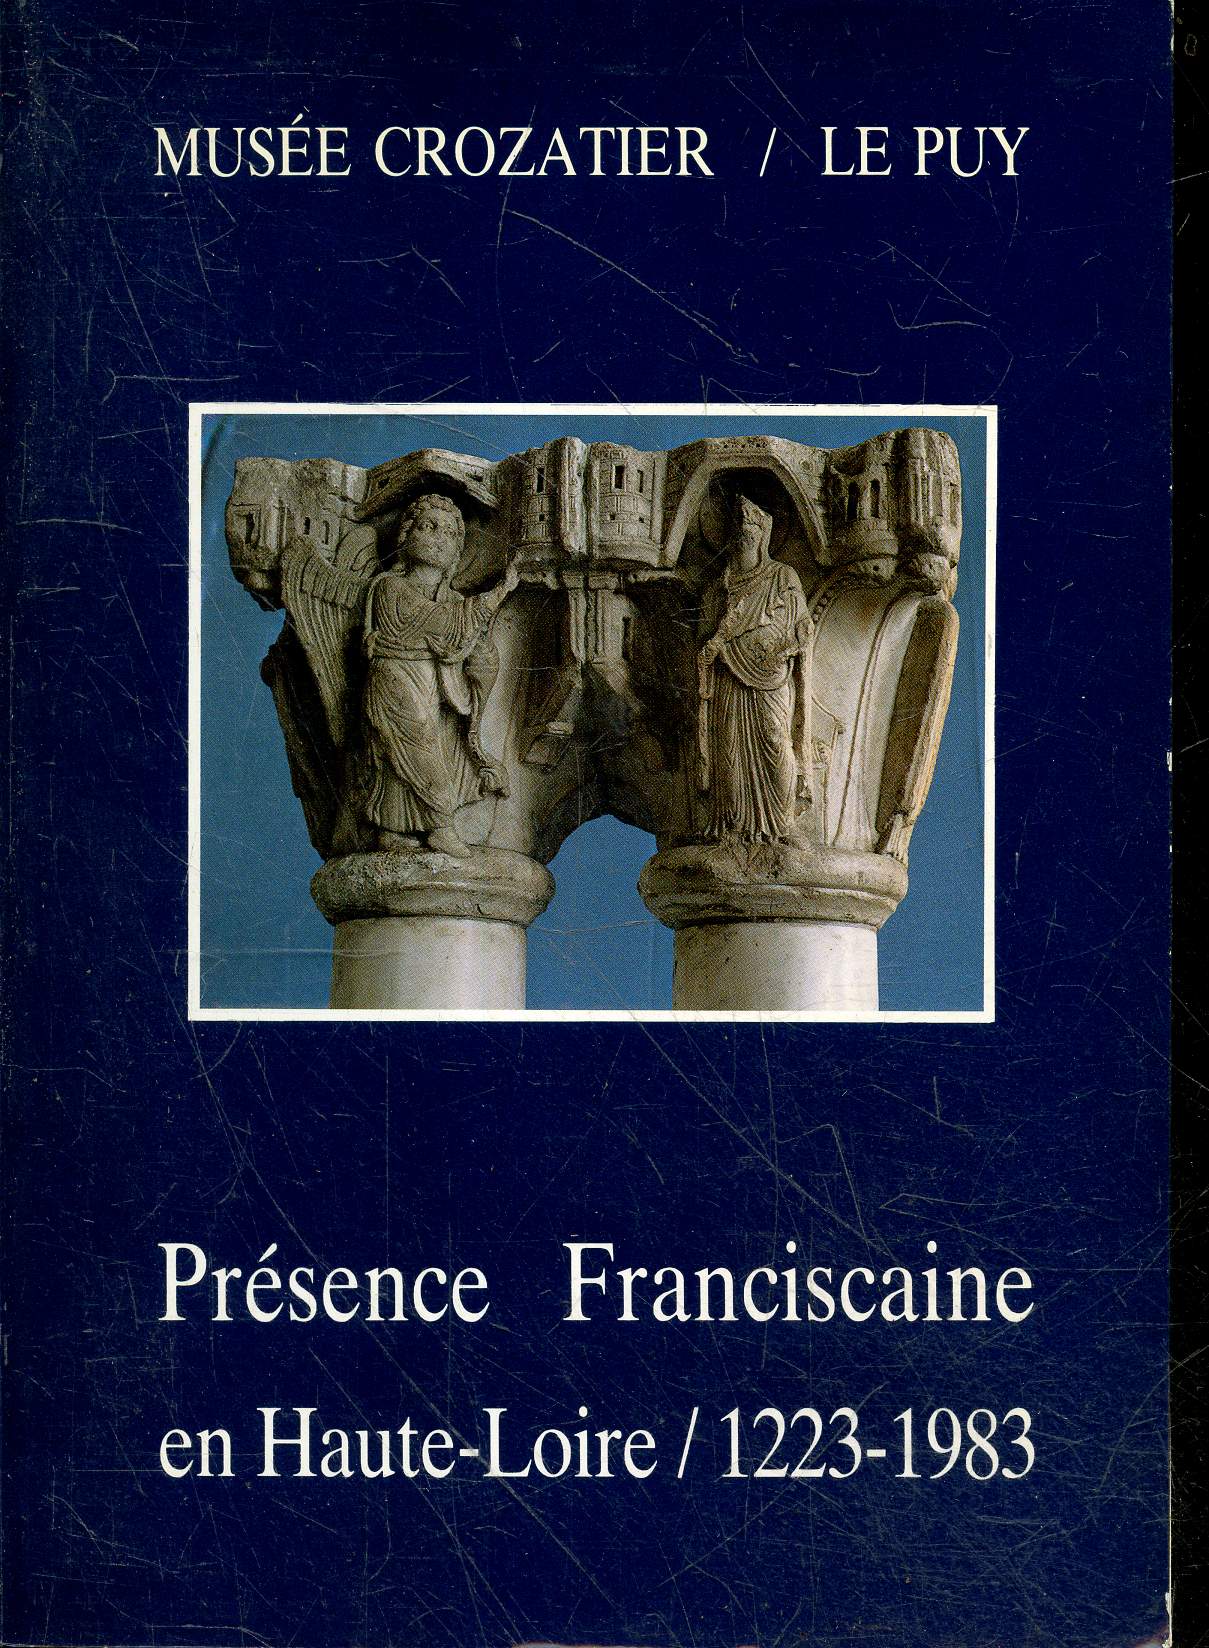 Musee Crozatier / Le Puy - Presence franciscaine en haute loire 1223-1983 - catalogue de l'exposition